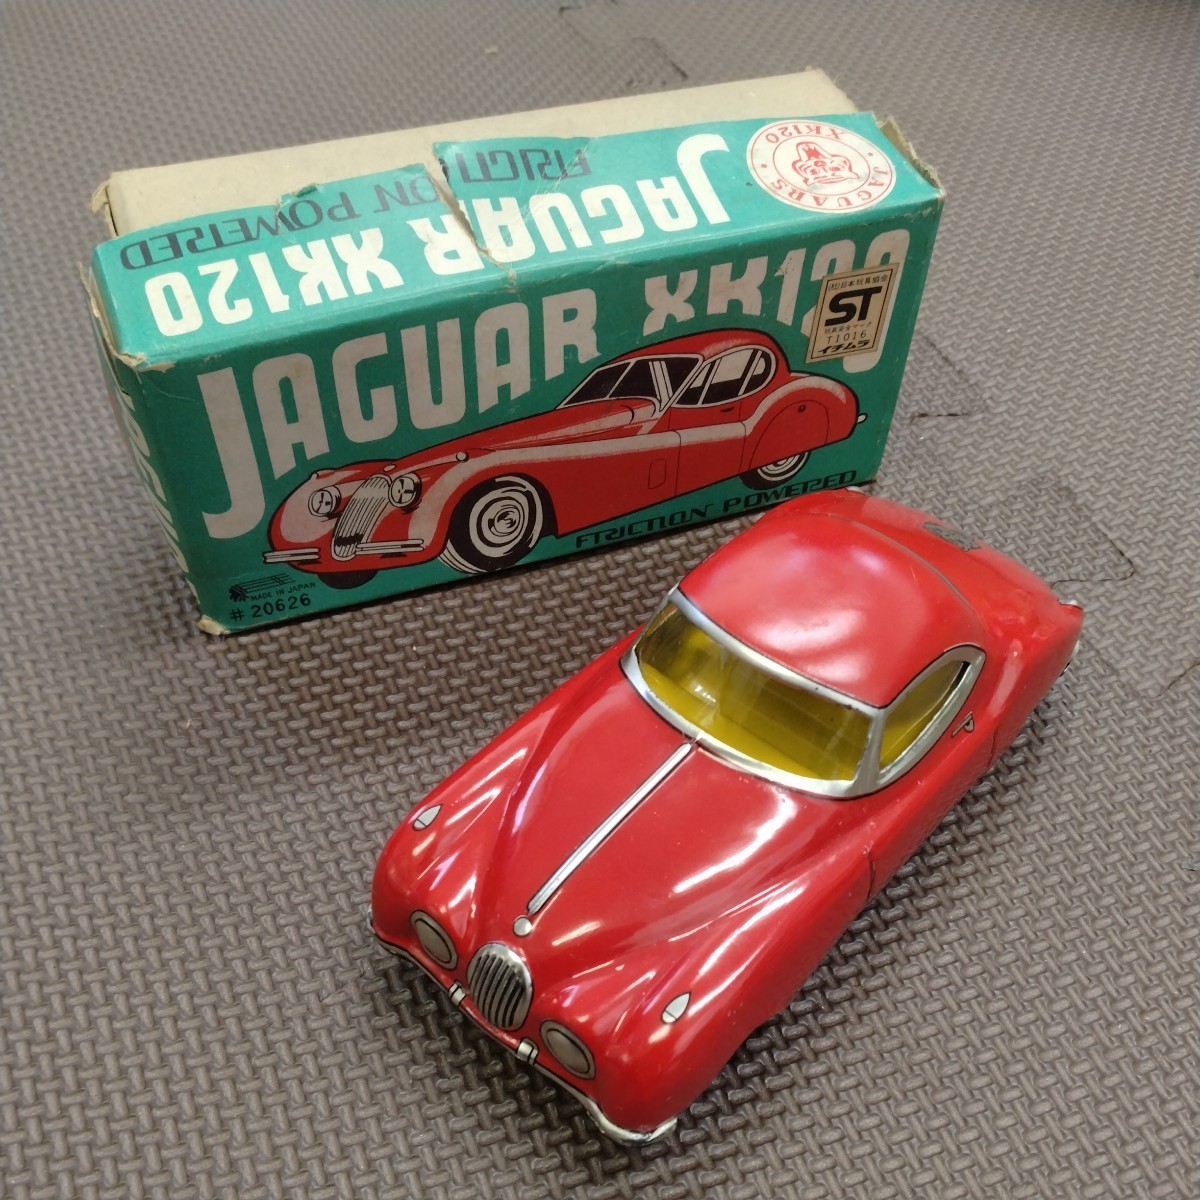 Jaguar Jaguar xk120 Friction Ichimura Showa Редкая ретро -игрушечная игрушка мини -автомобиль Троики приблизительно 14 см коробки